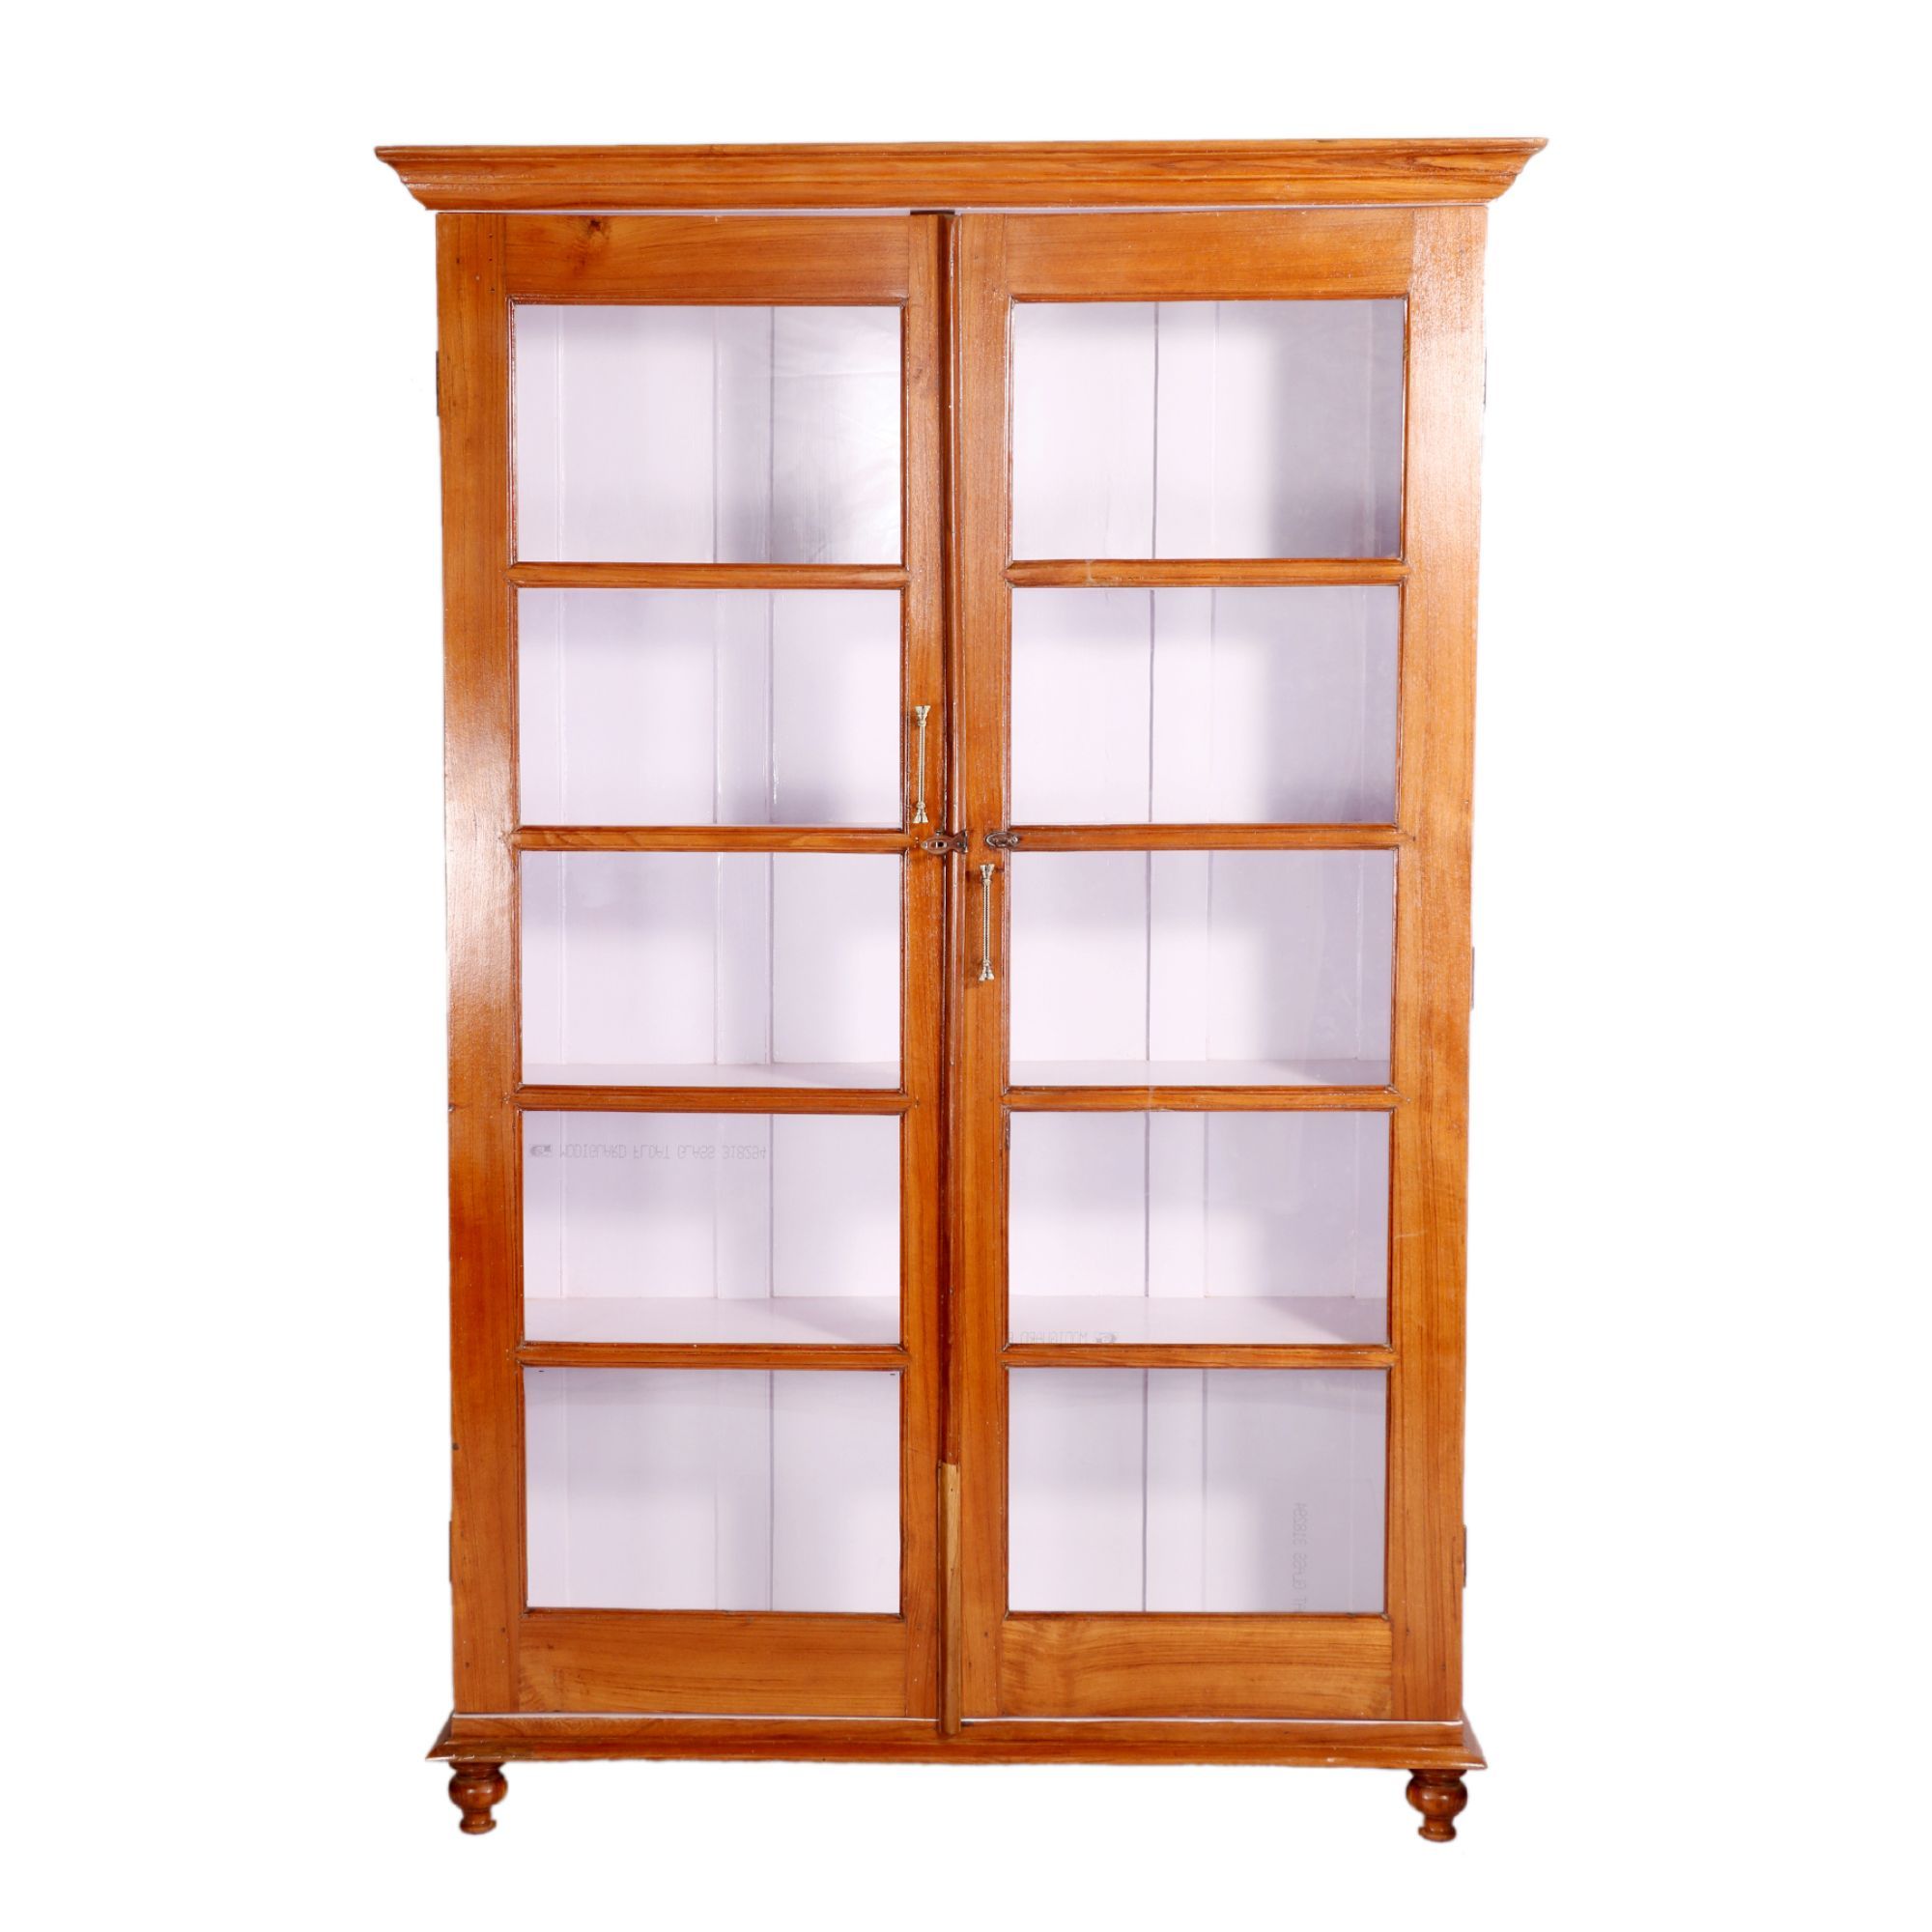 5-Shelf Teak Wood Cabinet Showcase